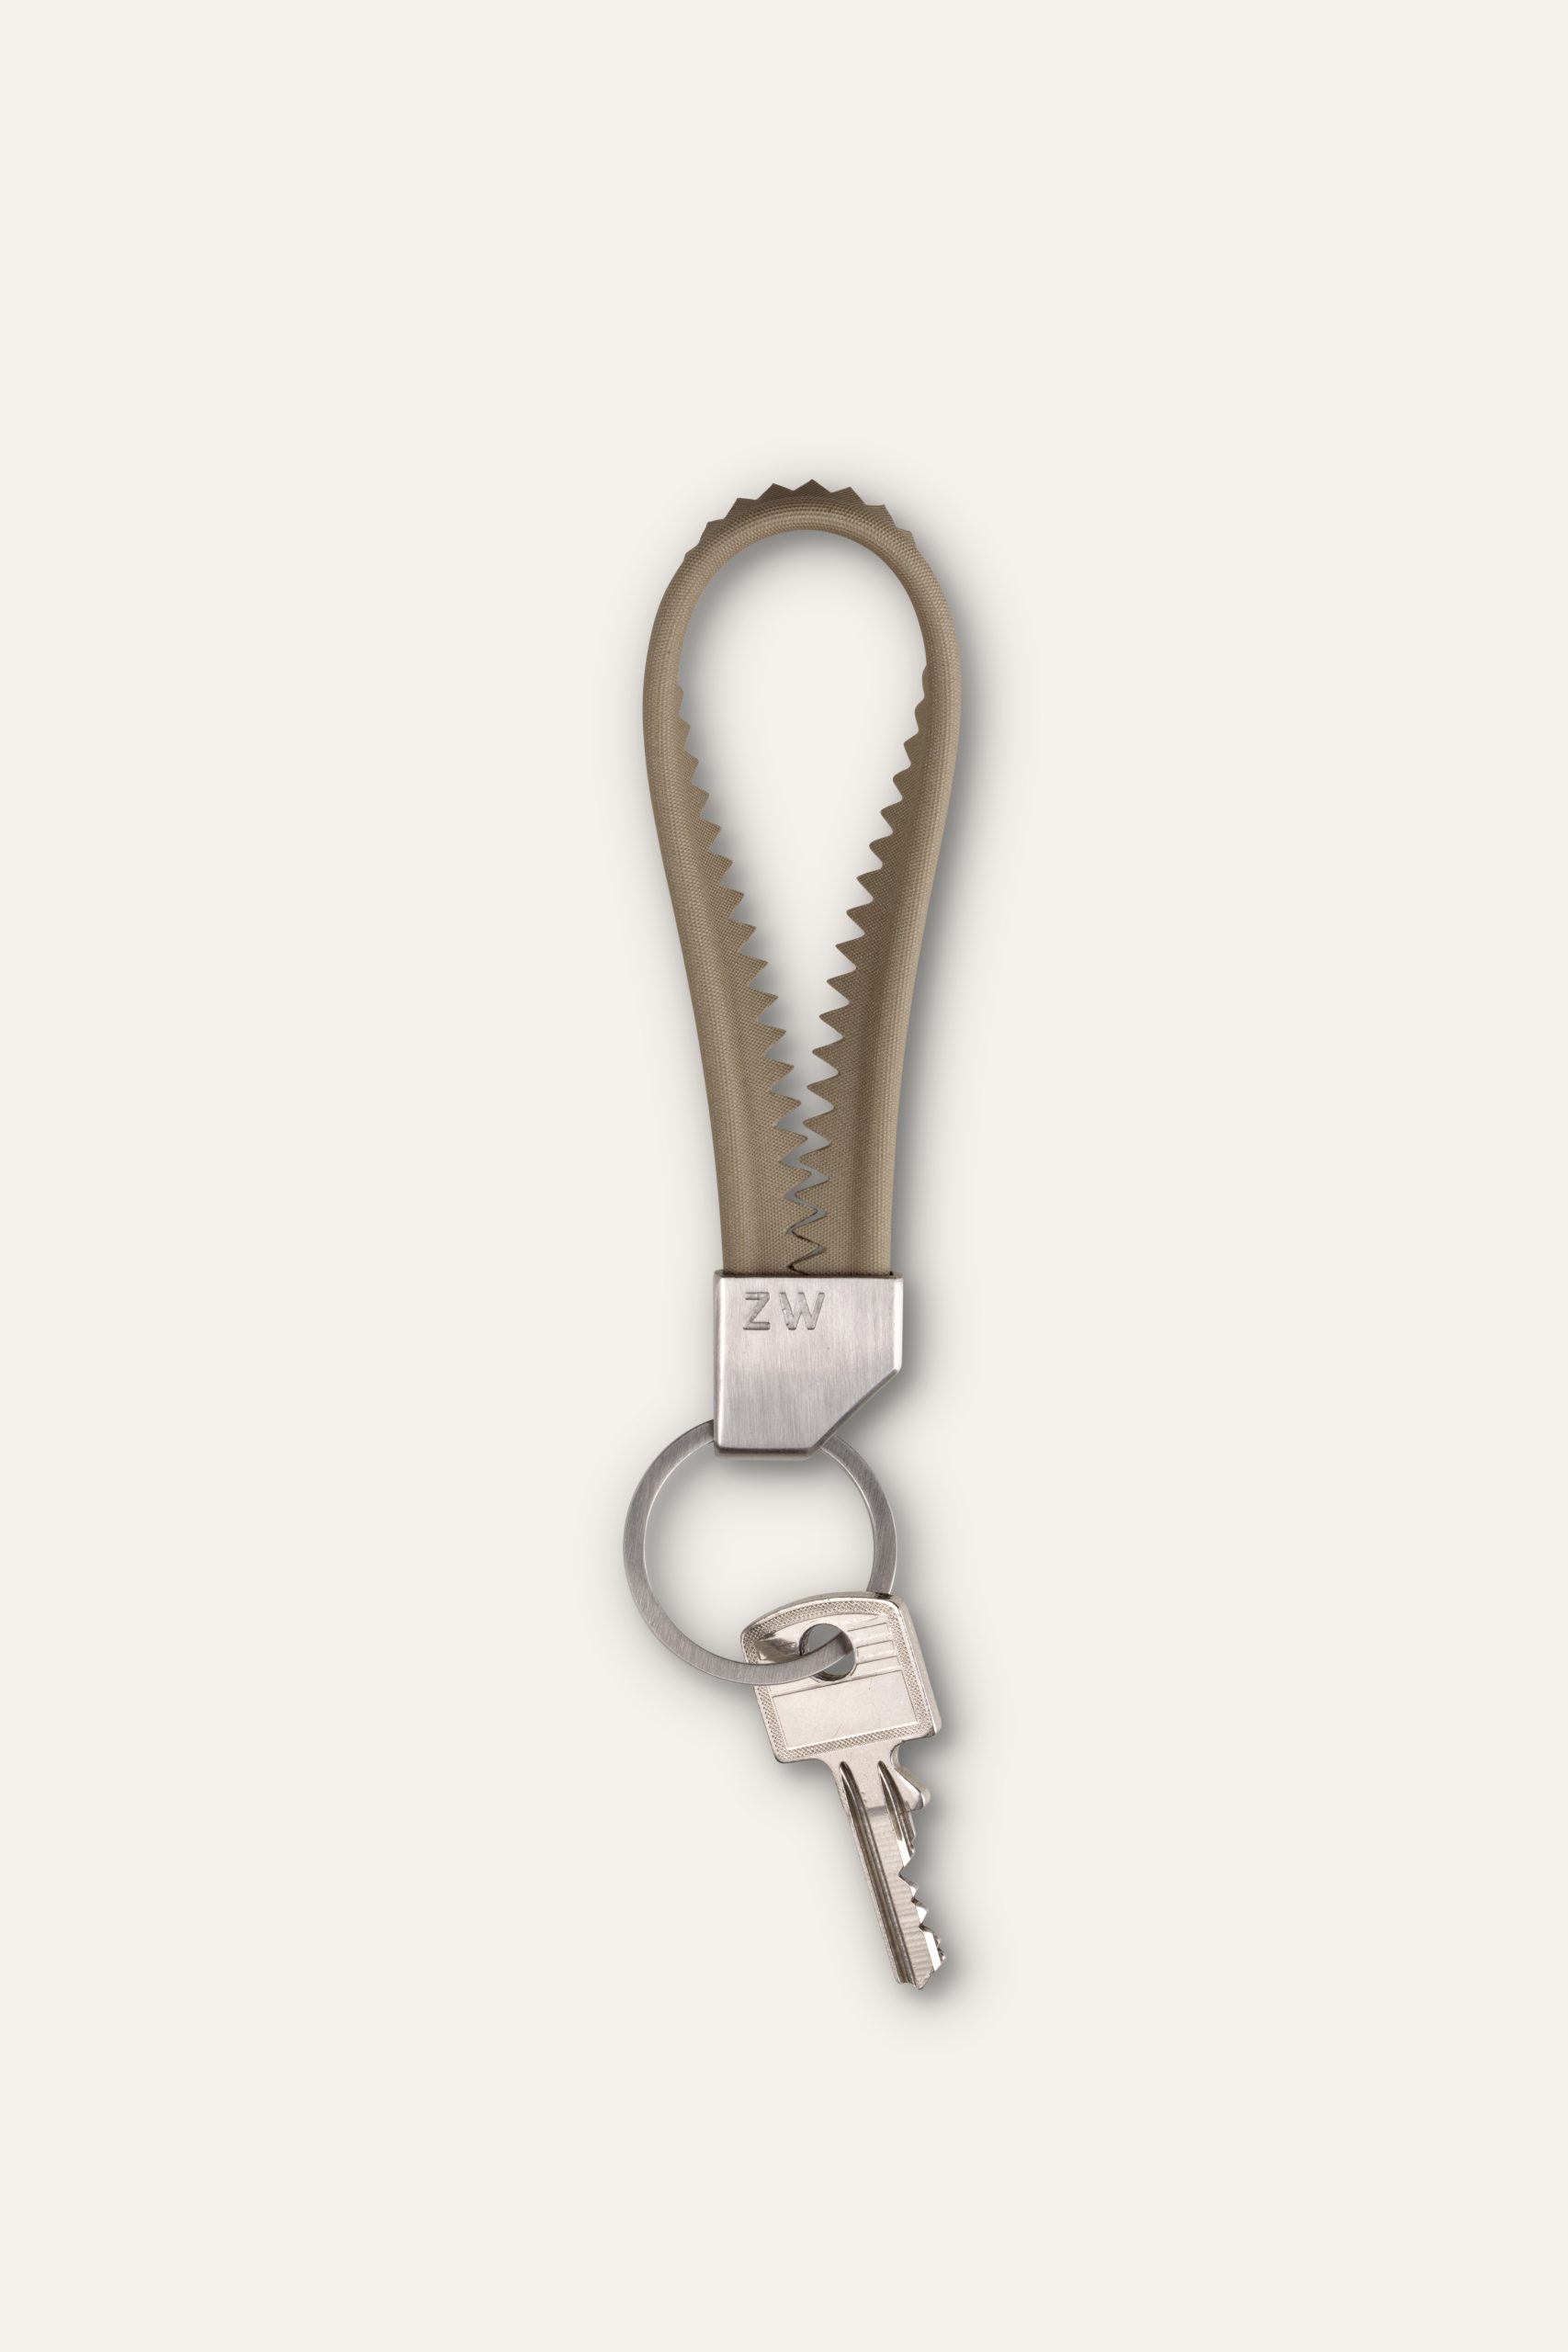 Das Foto zeigt den Schlüsselanhänger "Keder" von der Marke Zweitwerk.